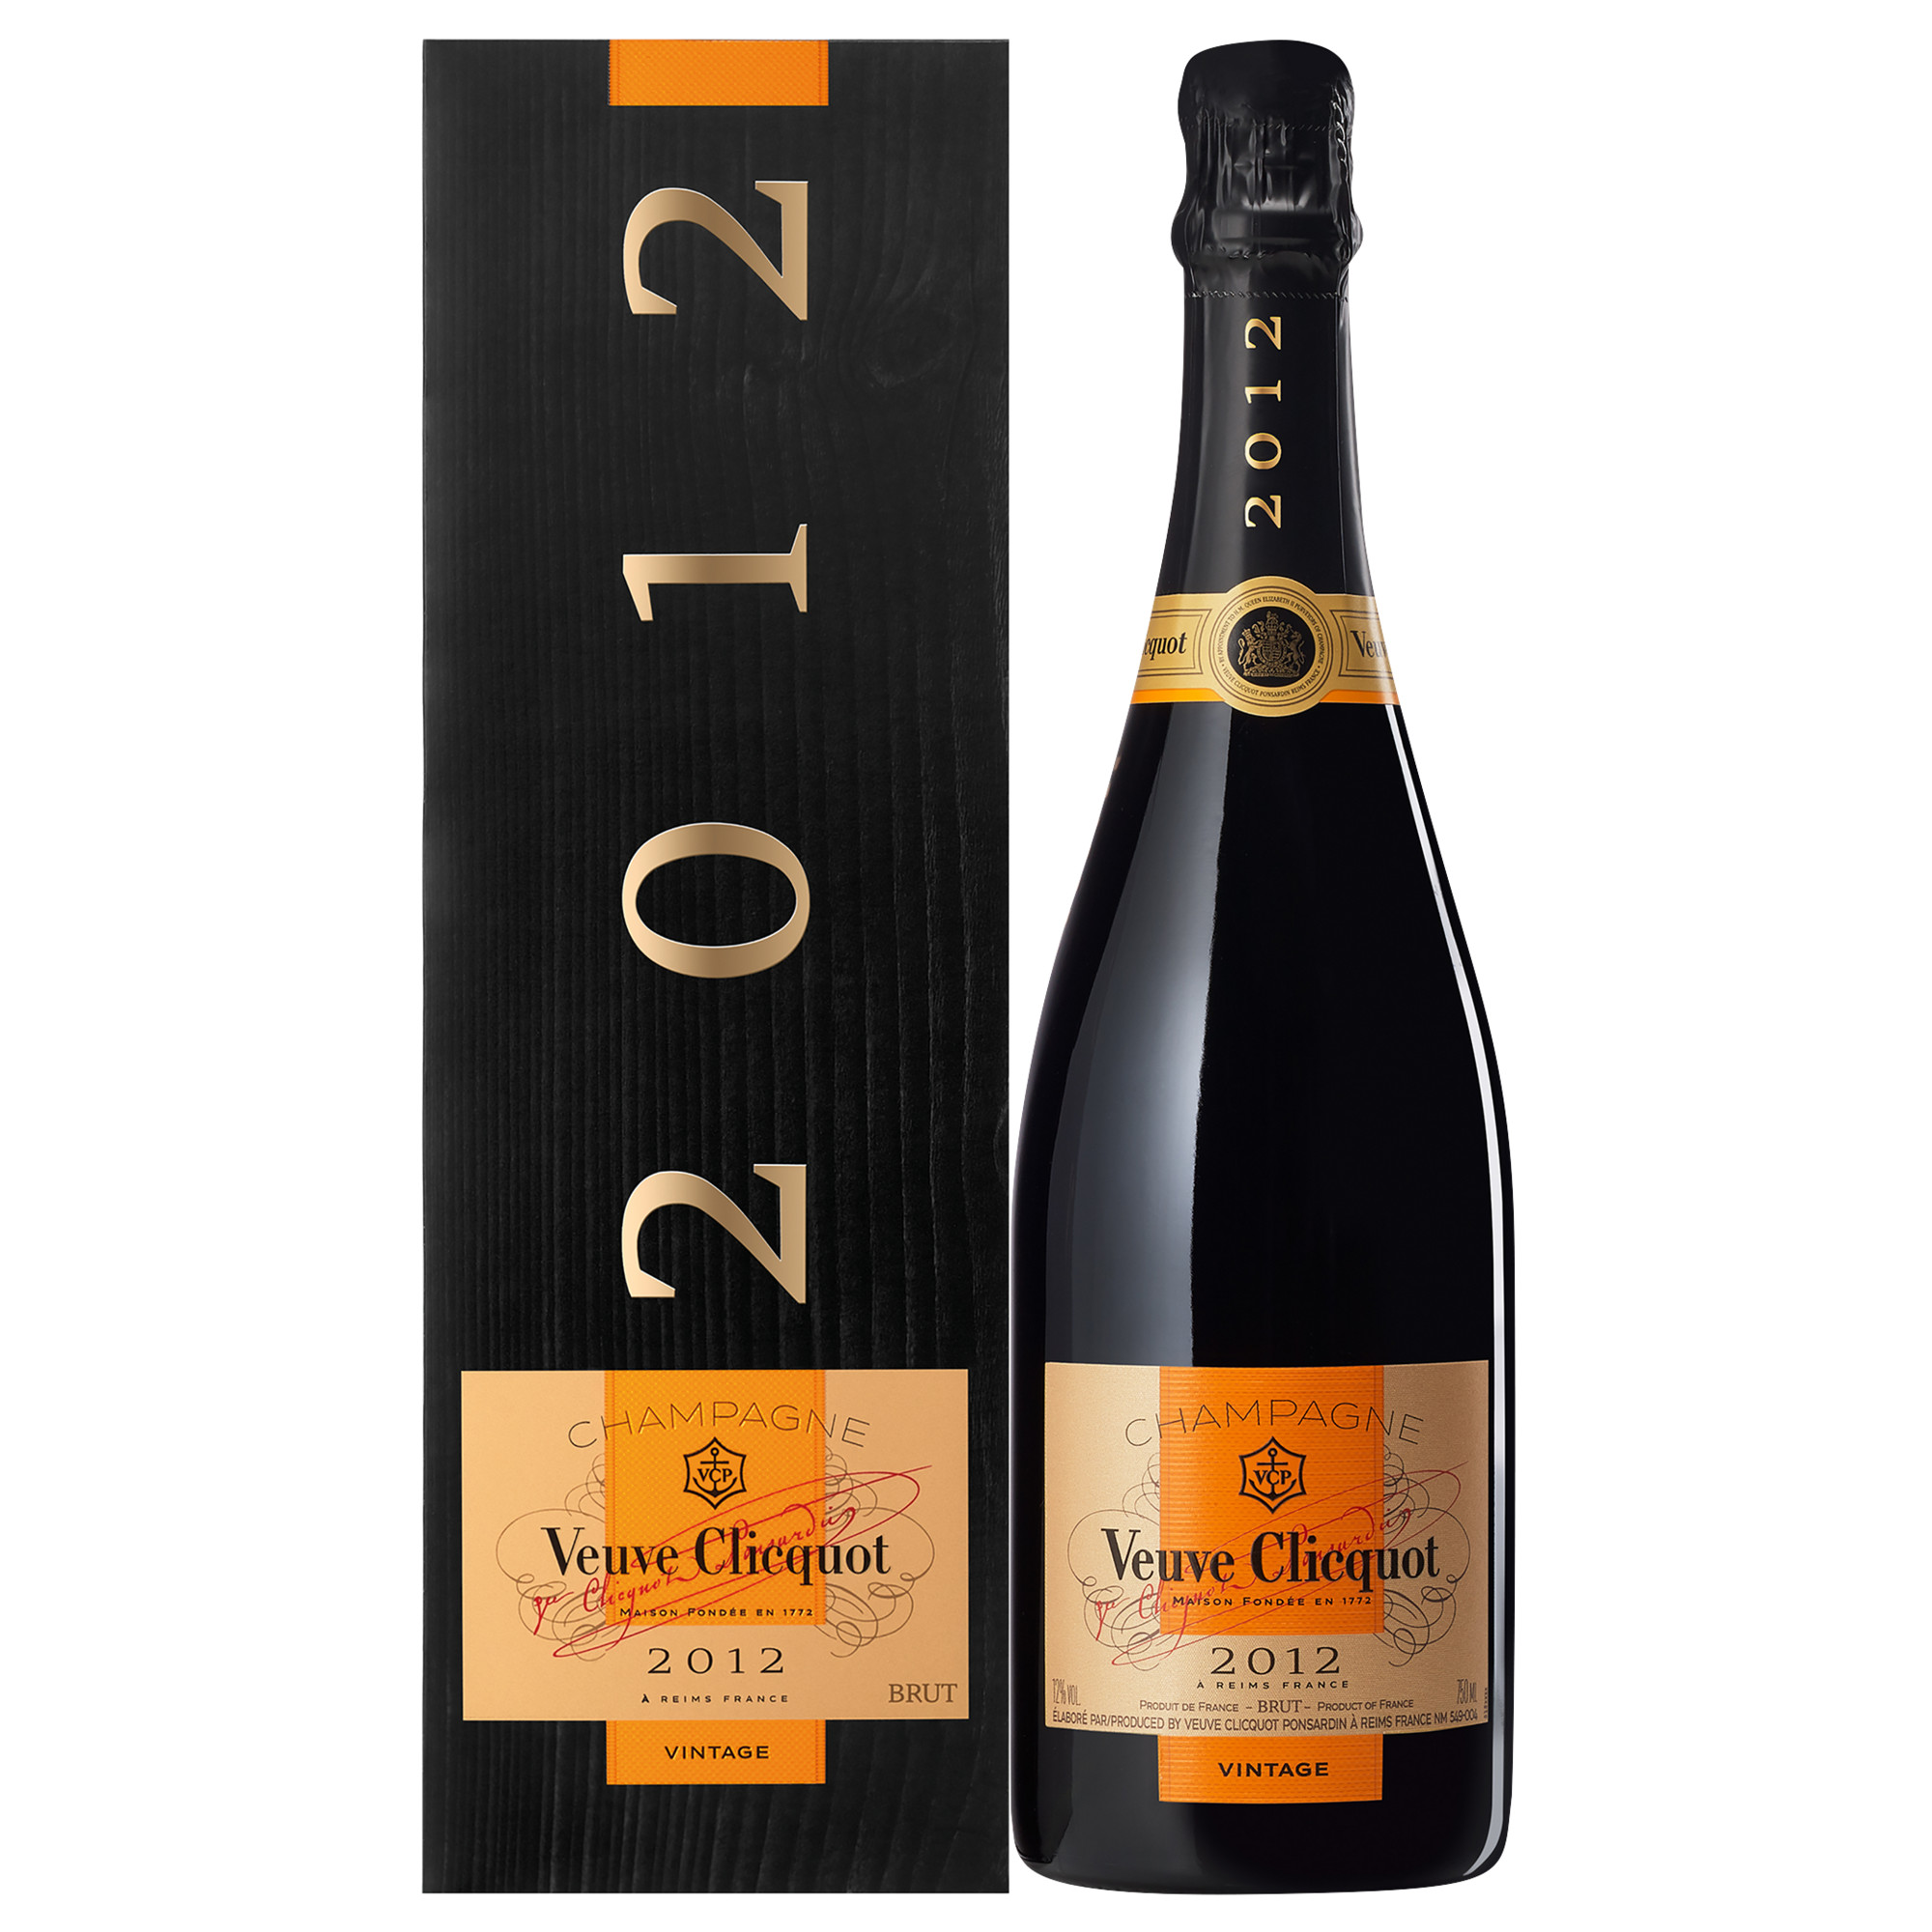 Champagne Veuve Clicquot Vintage, Brut, Champagne AC, Geschenketui, Champagne, 2012, Schaumwein  Champagner Hawesko